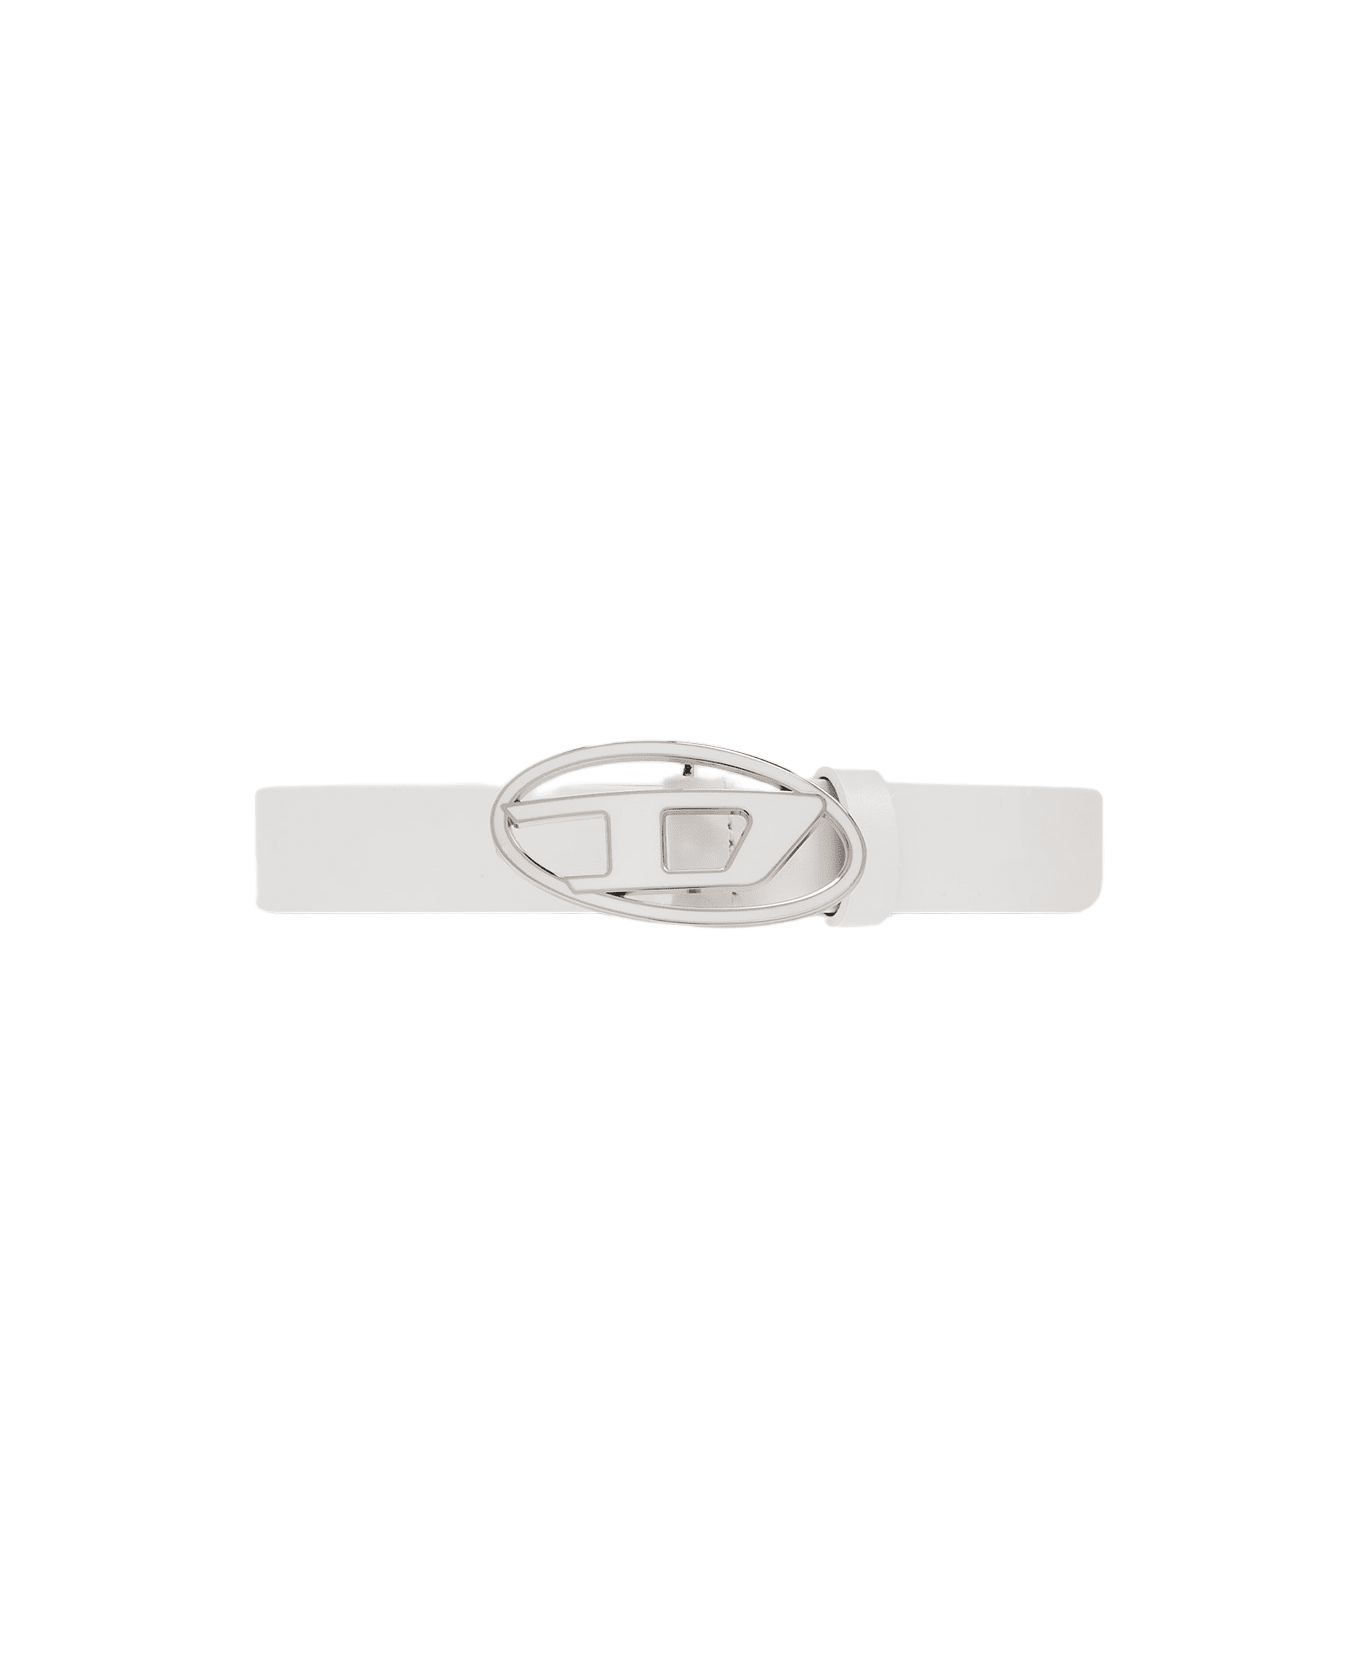 Diesel Oval D Logo B-1dr 25 Belt White Leather Belt With Oval-d Buckle - B-1dr 25 Belt